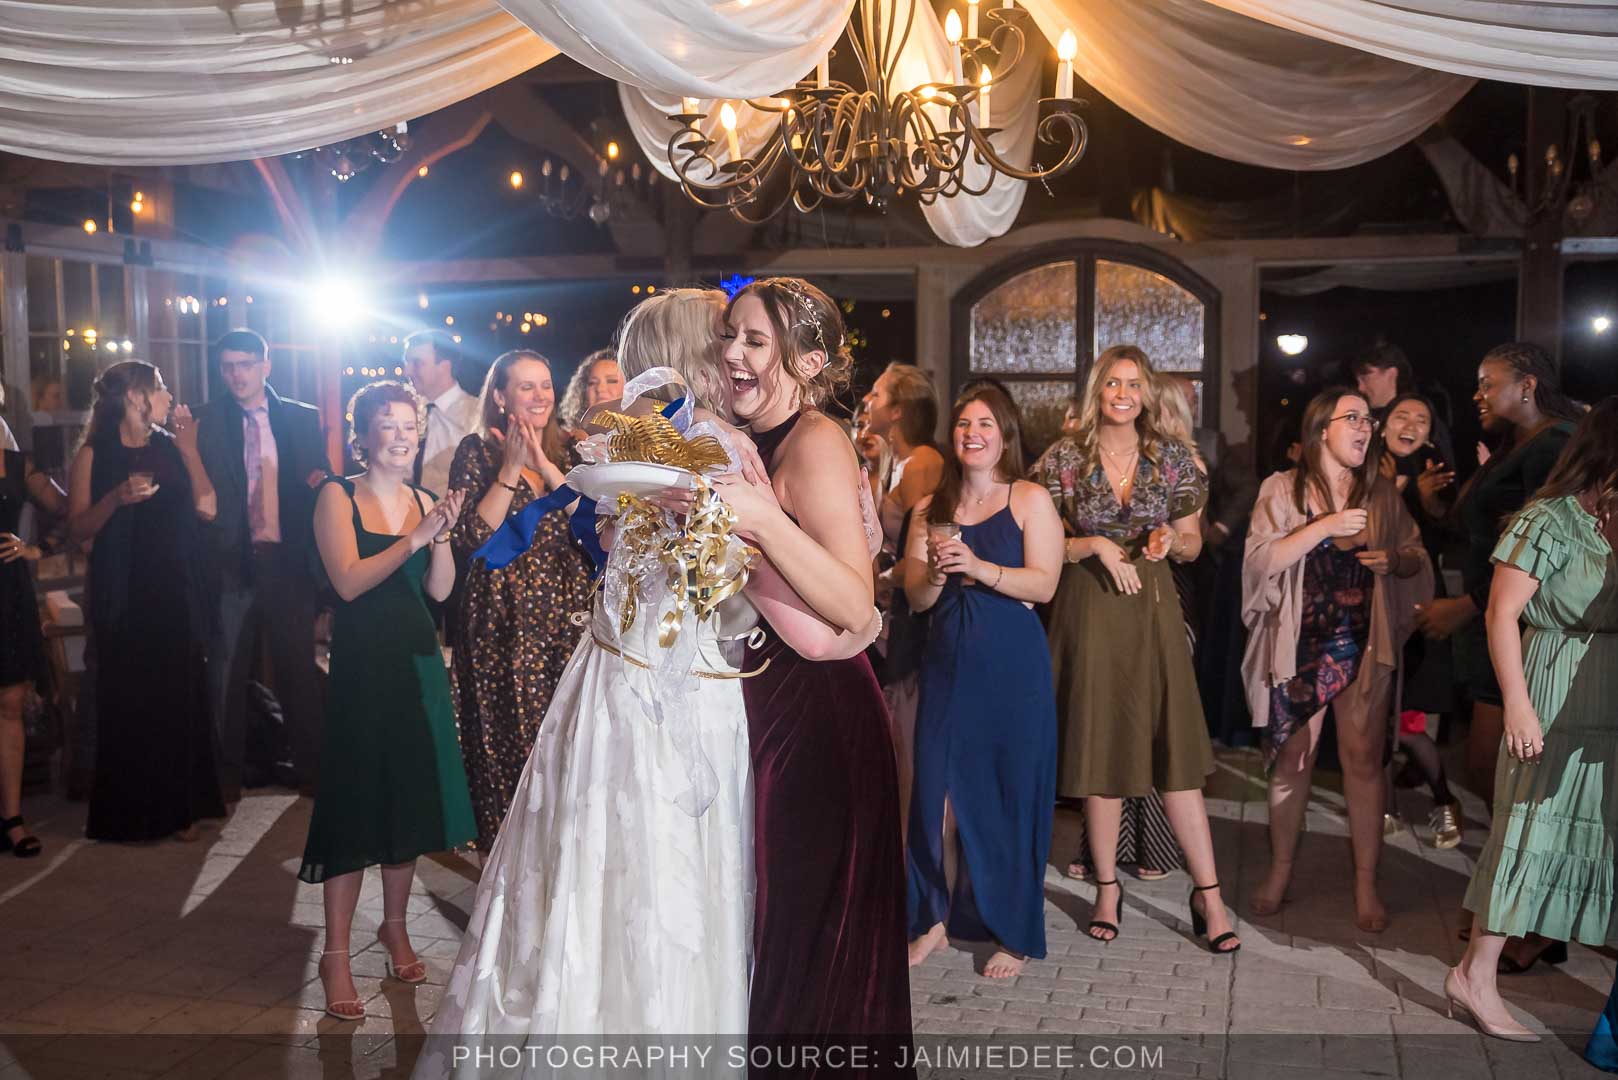 Rocky's Lake Estate Wedding Venue - reception - bride tosses bouquet inside pavilion with ceiling drapes - bouquet toss